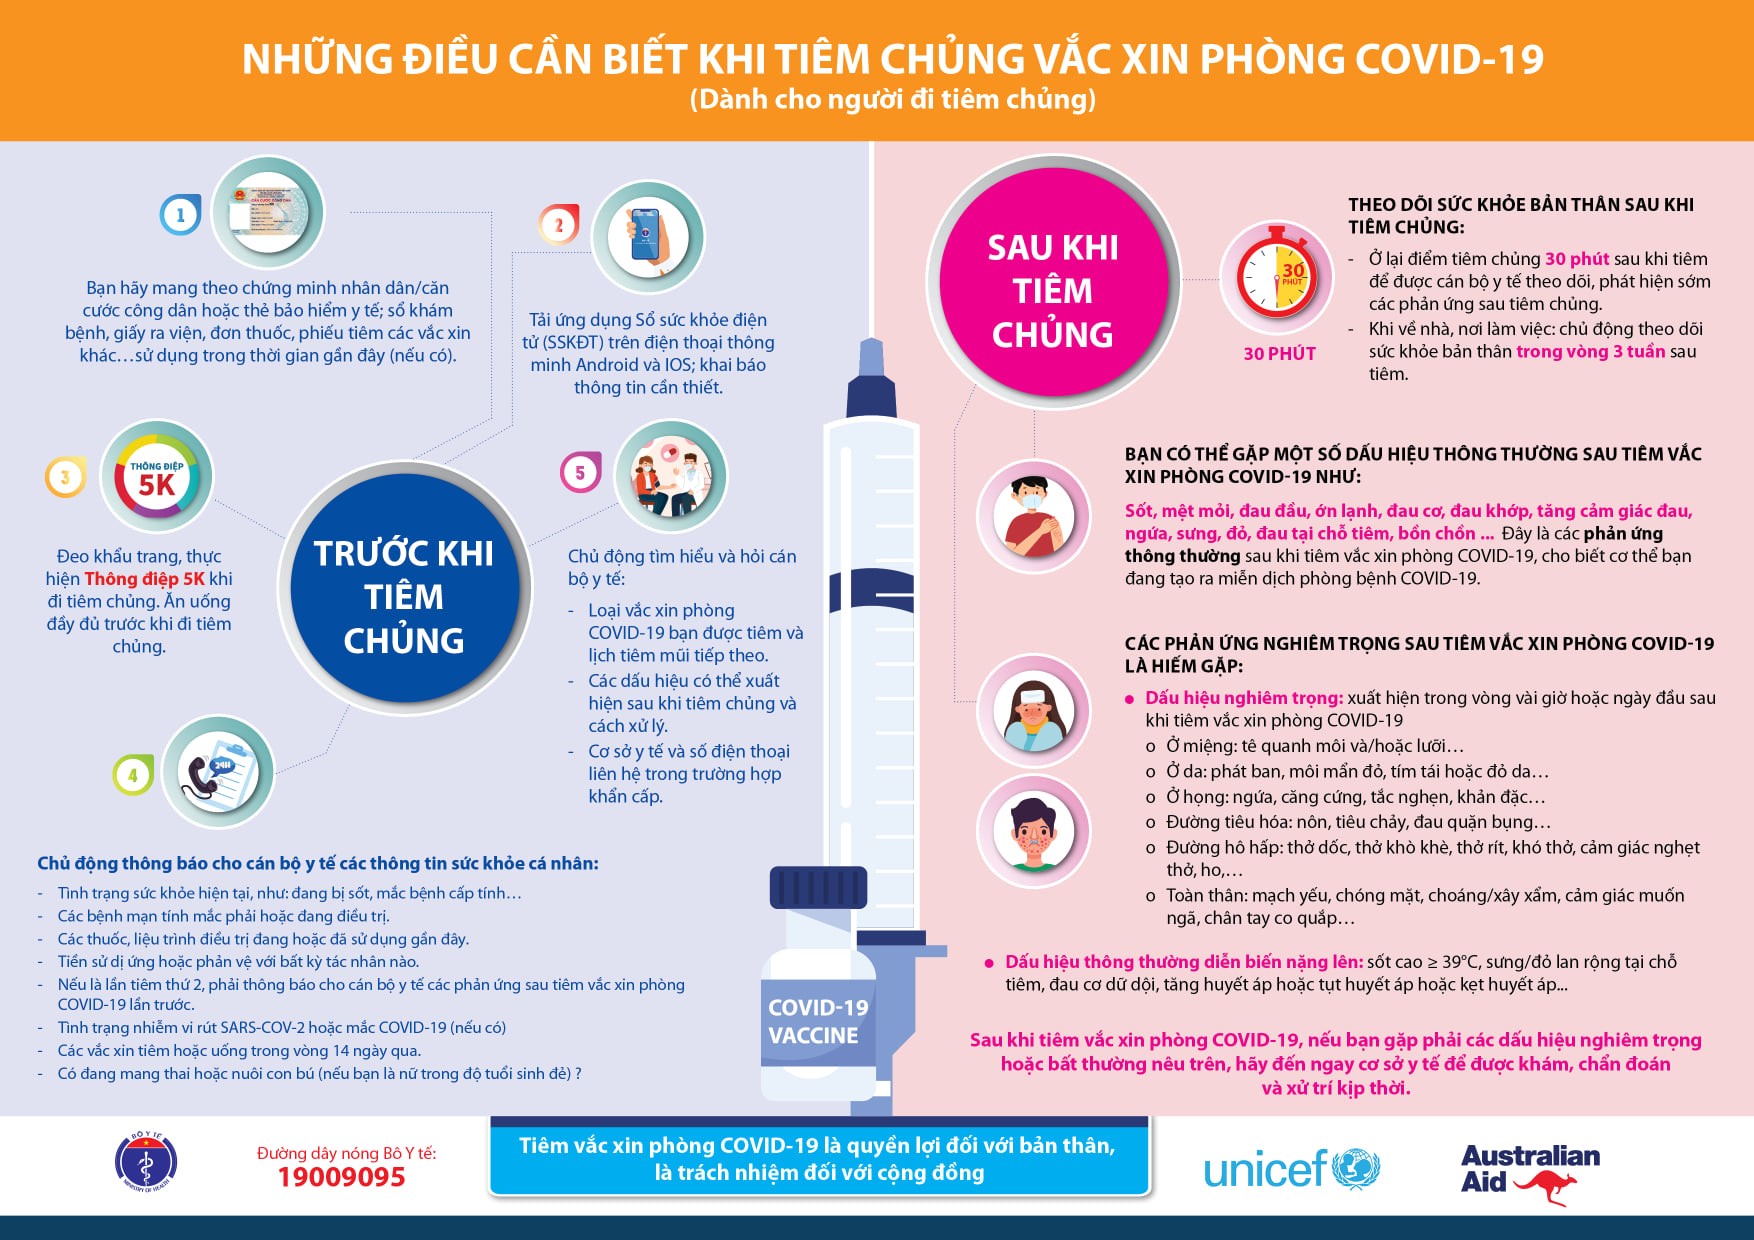 Một số điều cần biết khi tiêm chủng vắc xin phòng Covid-19 theo quy định Bộ Y tế - Ảnh minh họa: Internet